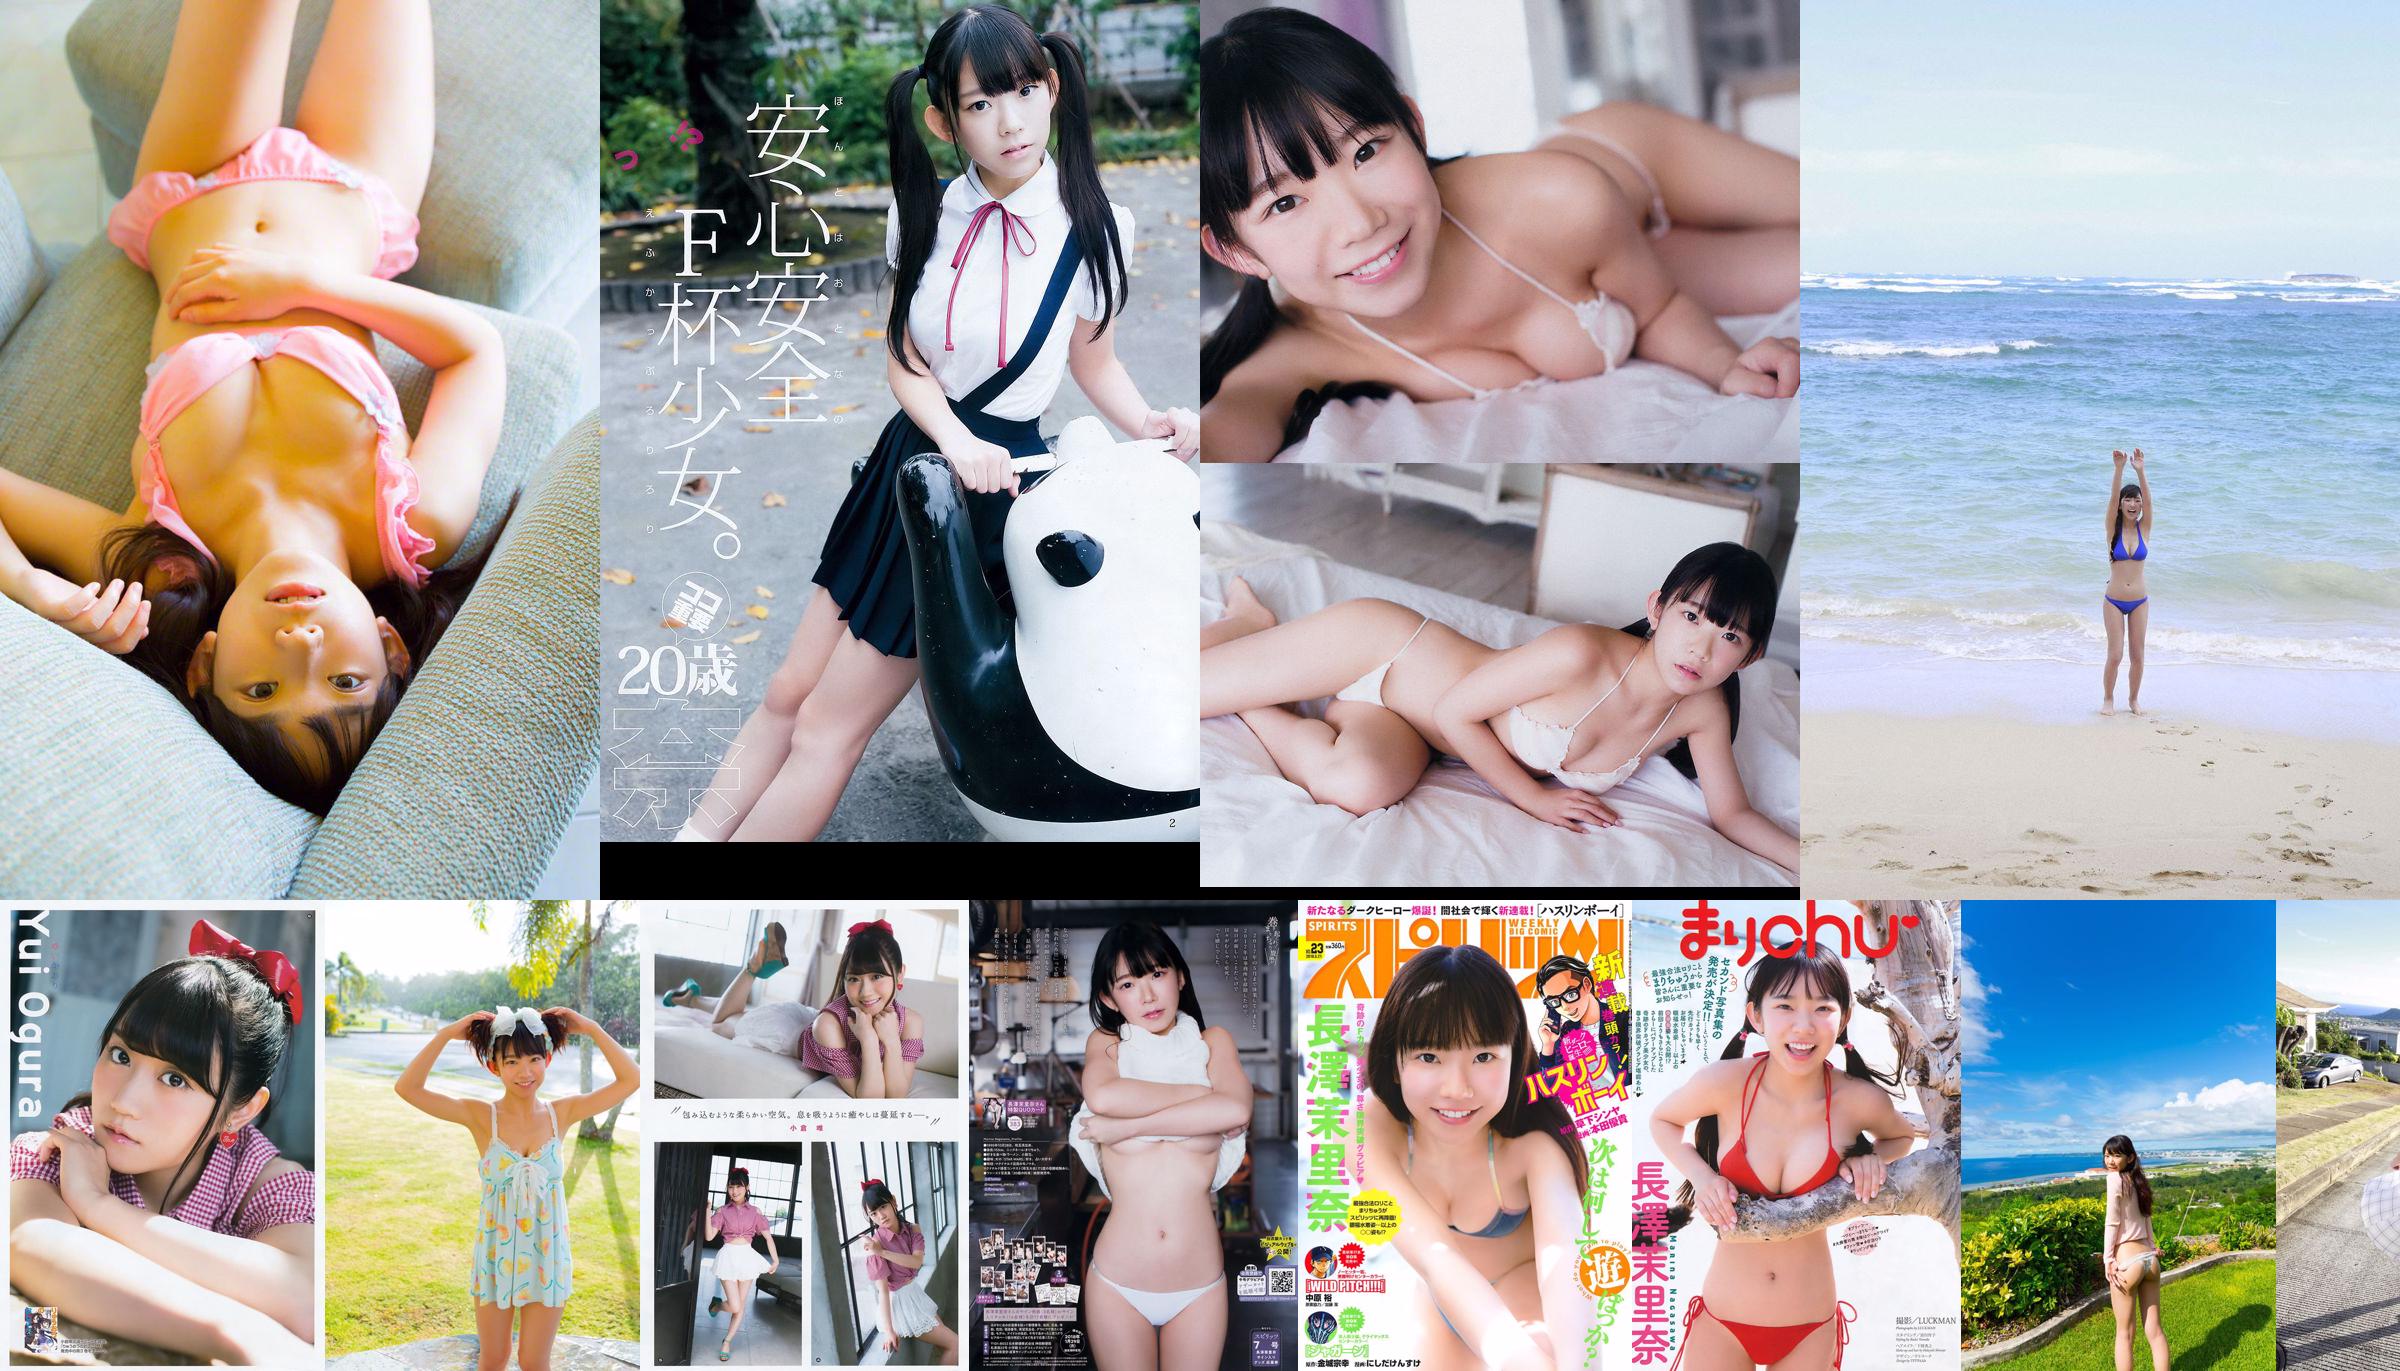 [WPB-net] Extra No. 584 Marina Nagasawa Nagasawa Morina "Bah て Legal Rory Big Tits!! Rasa Bersalah" No.4e33a8 Halaman 9